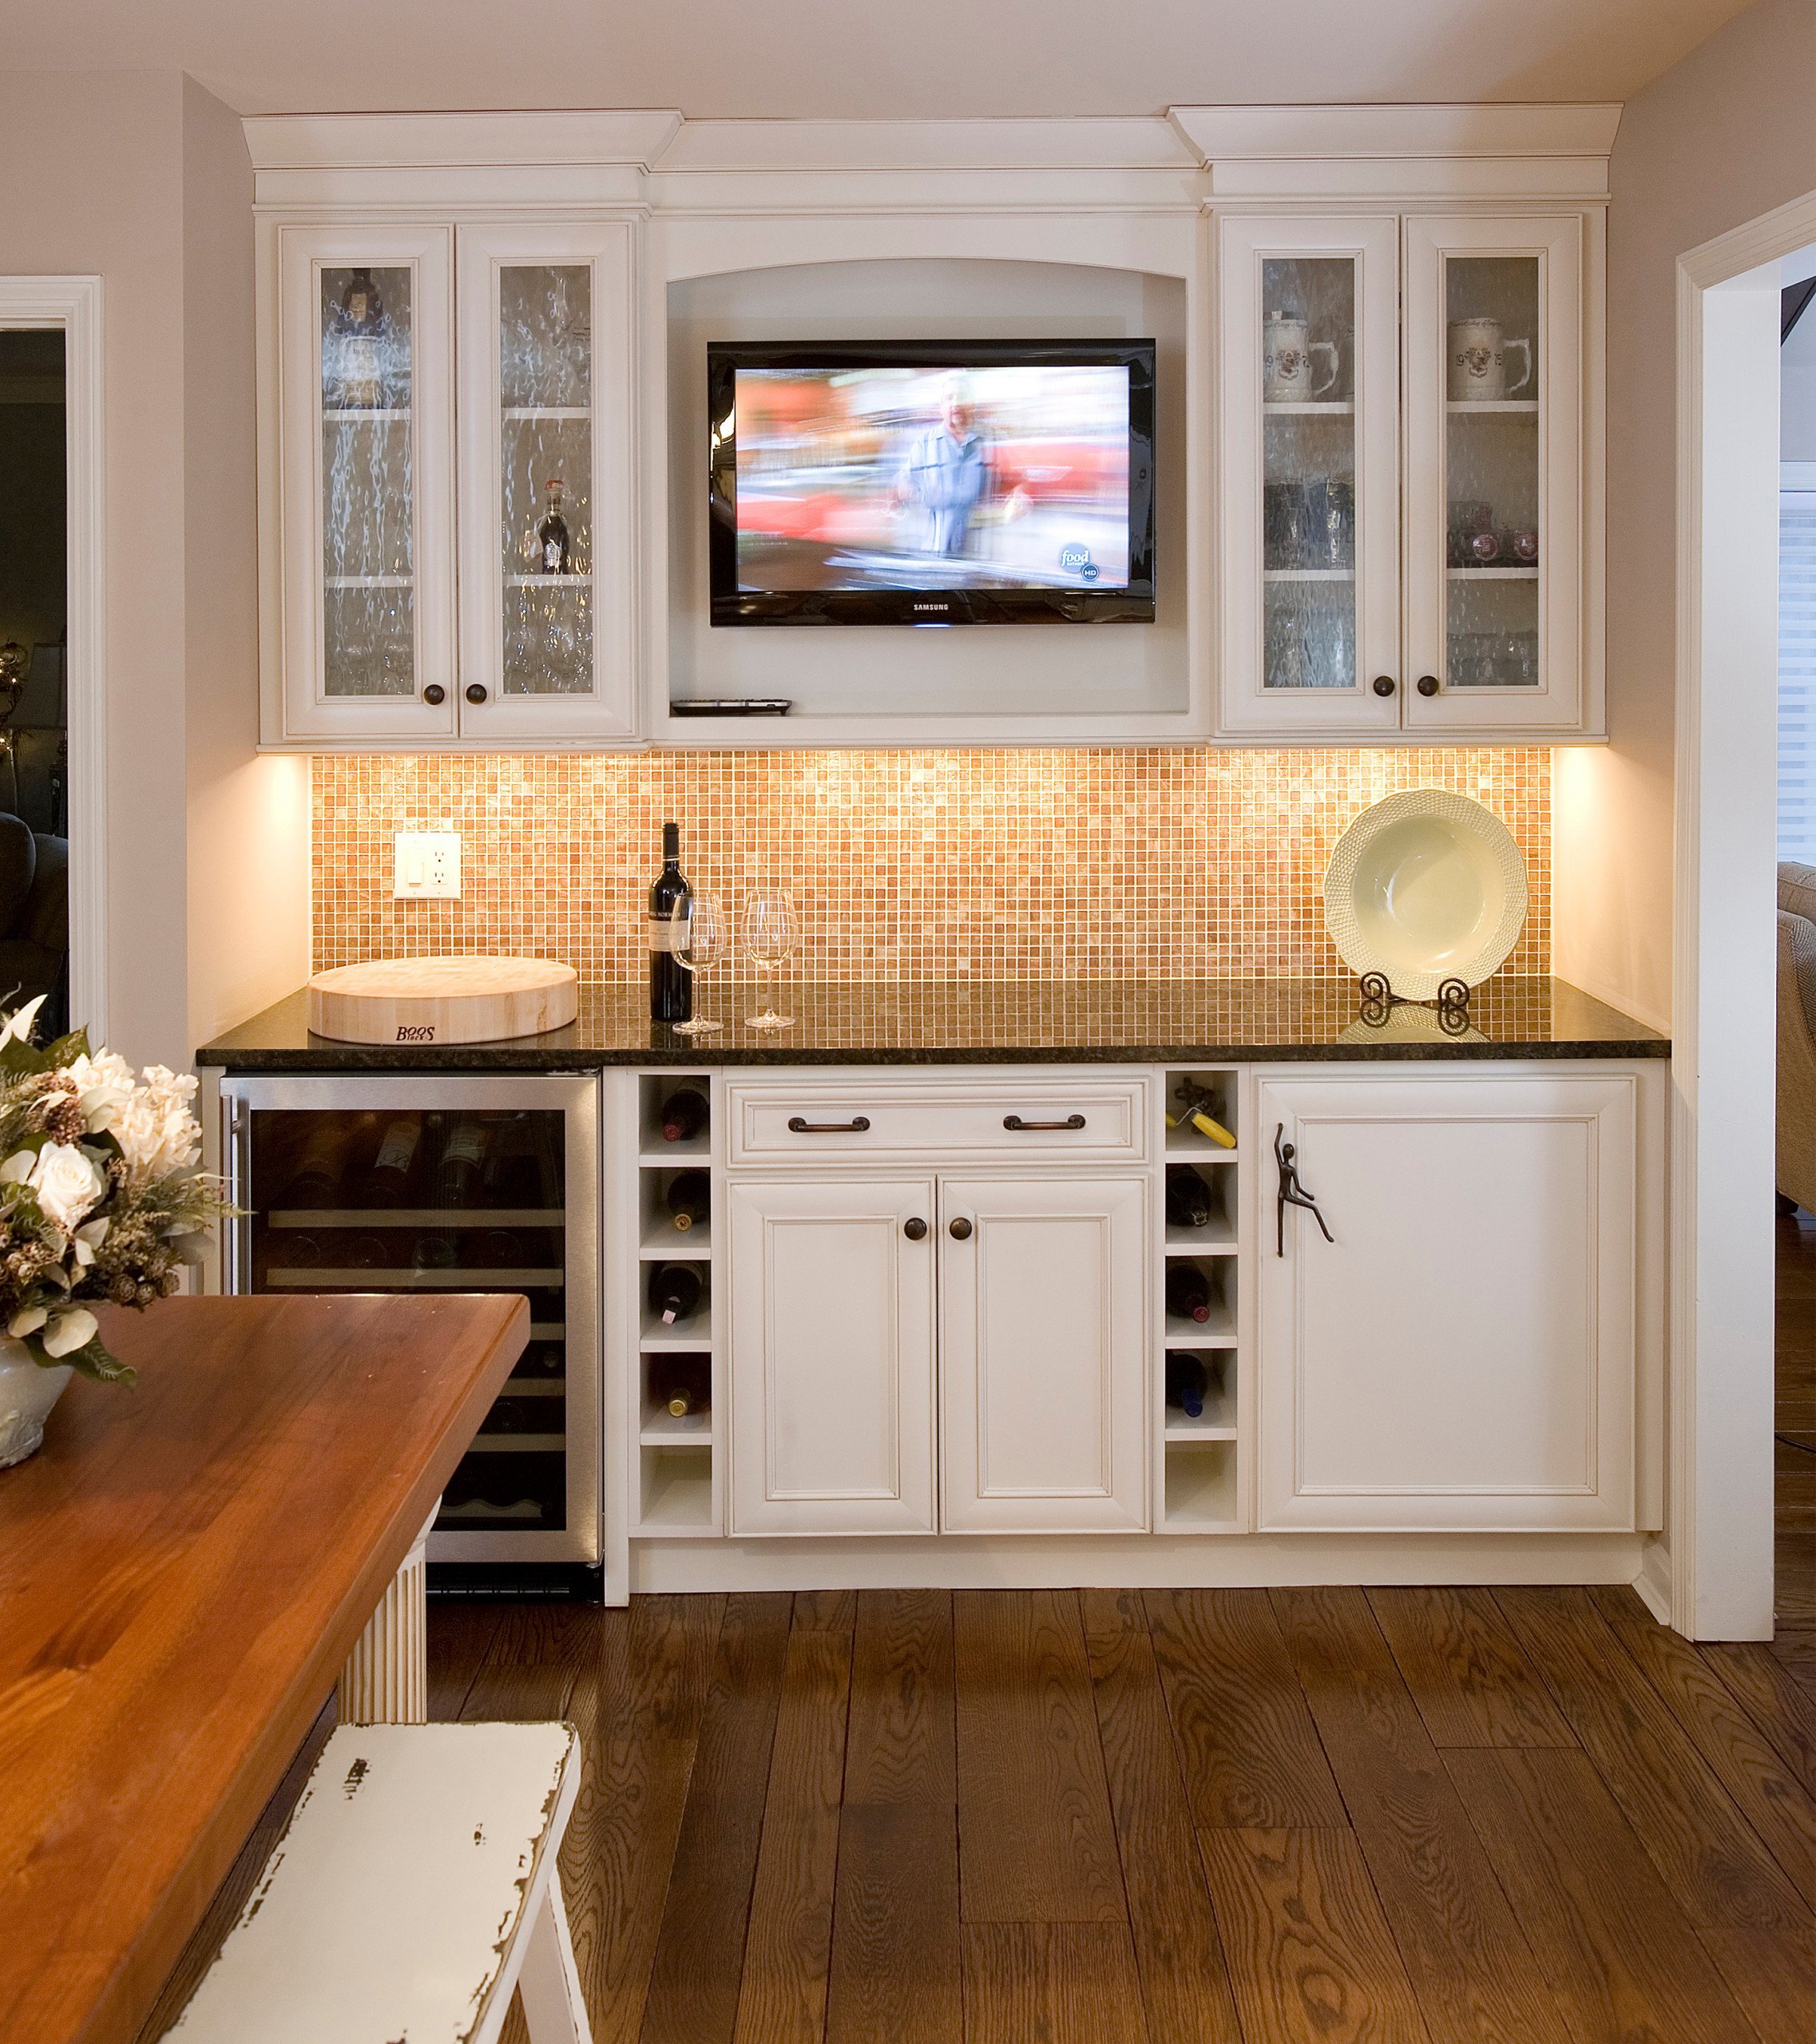 Лучшие телевизоры для кухни. Встраиваемый телевизор для кухни. Телевизор в кухонной мебели. Телевизор встроенный в кухню. Кухонный гарнитур с телевизором.